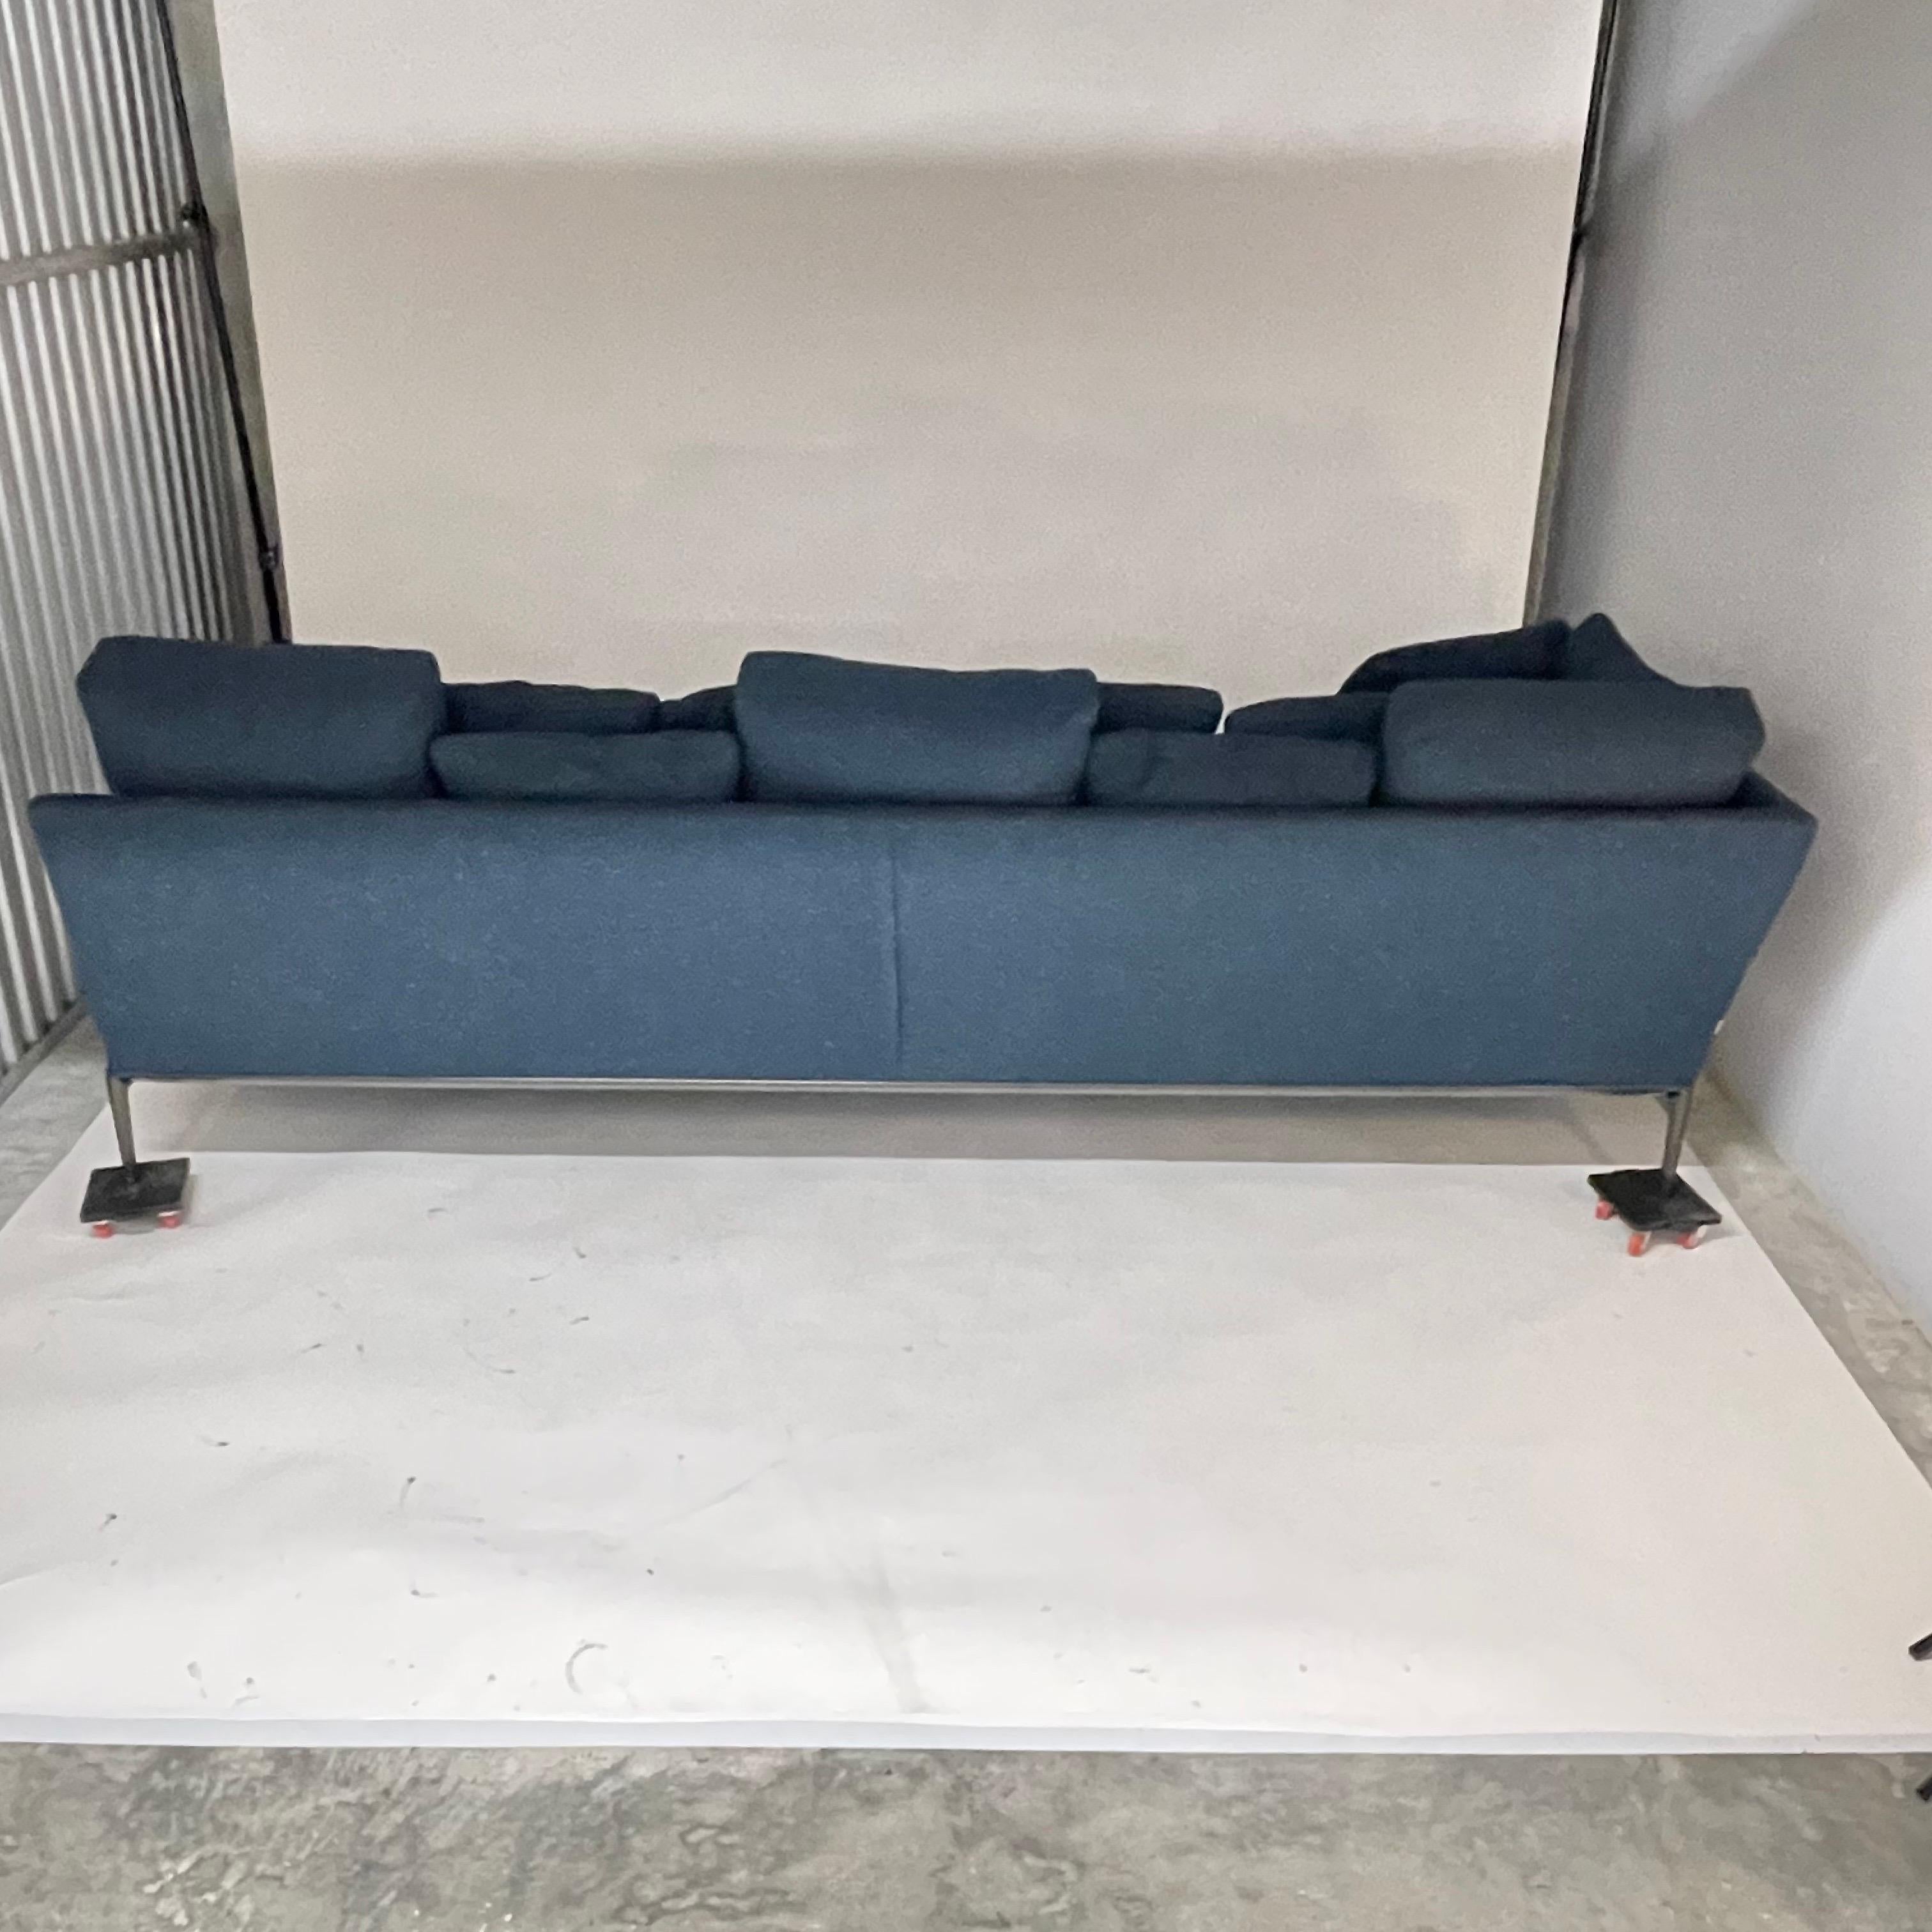 Woven Antonio Citterio Atoll Sofa for B&B Italia, Italy, 2018 For Sale